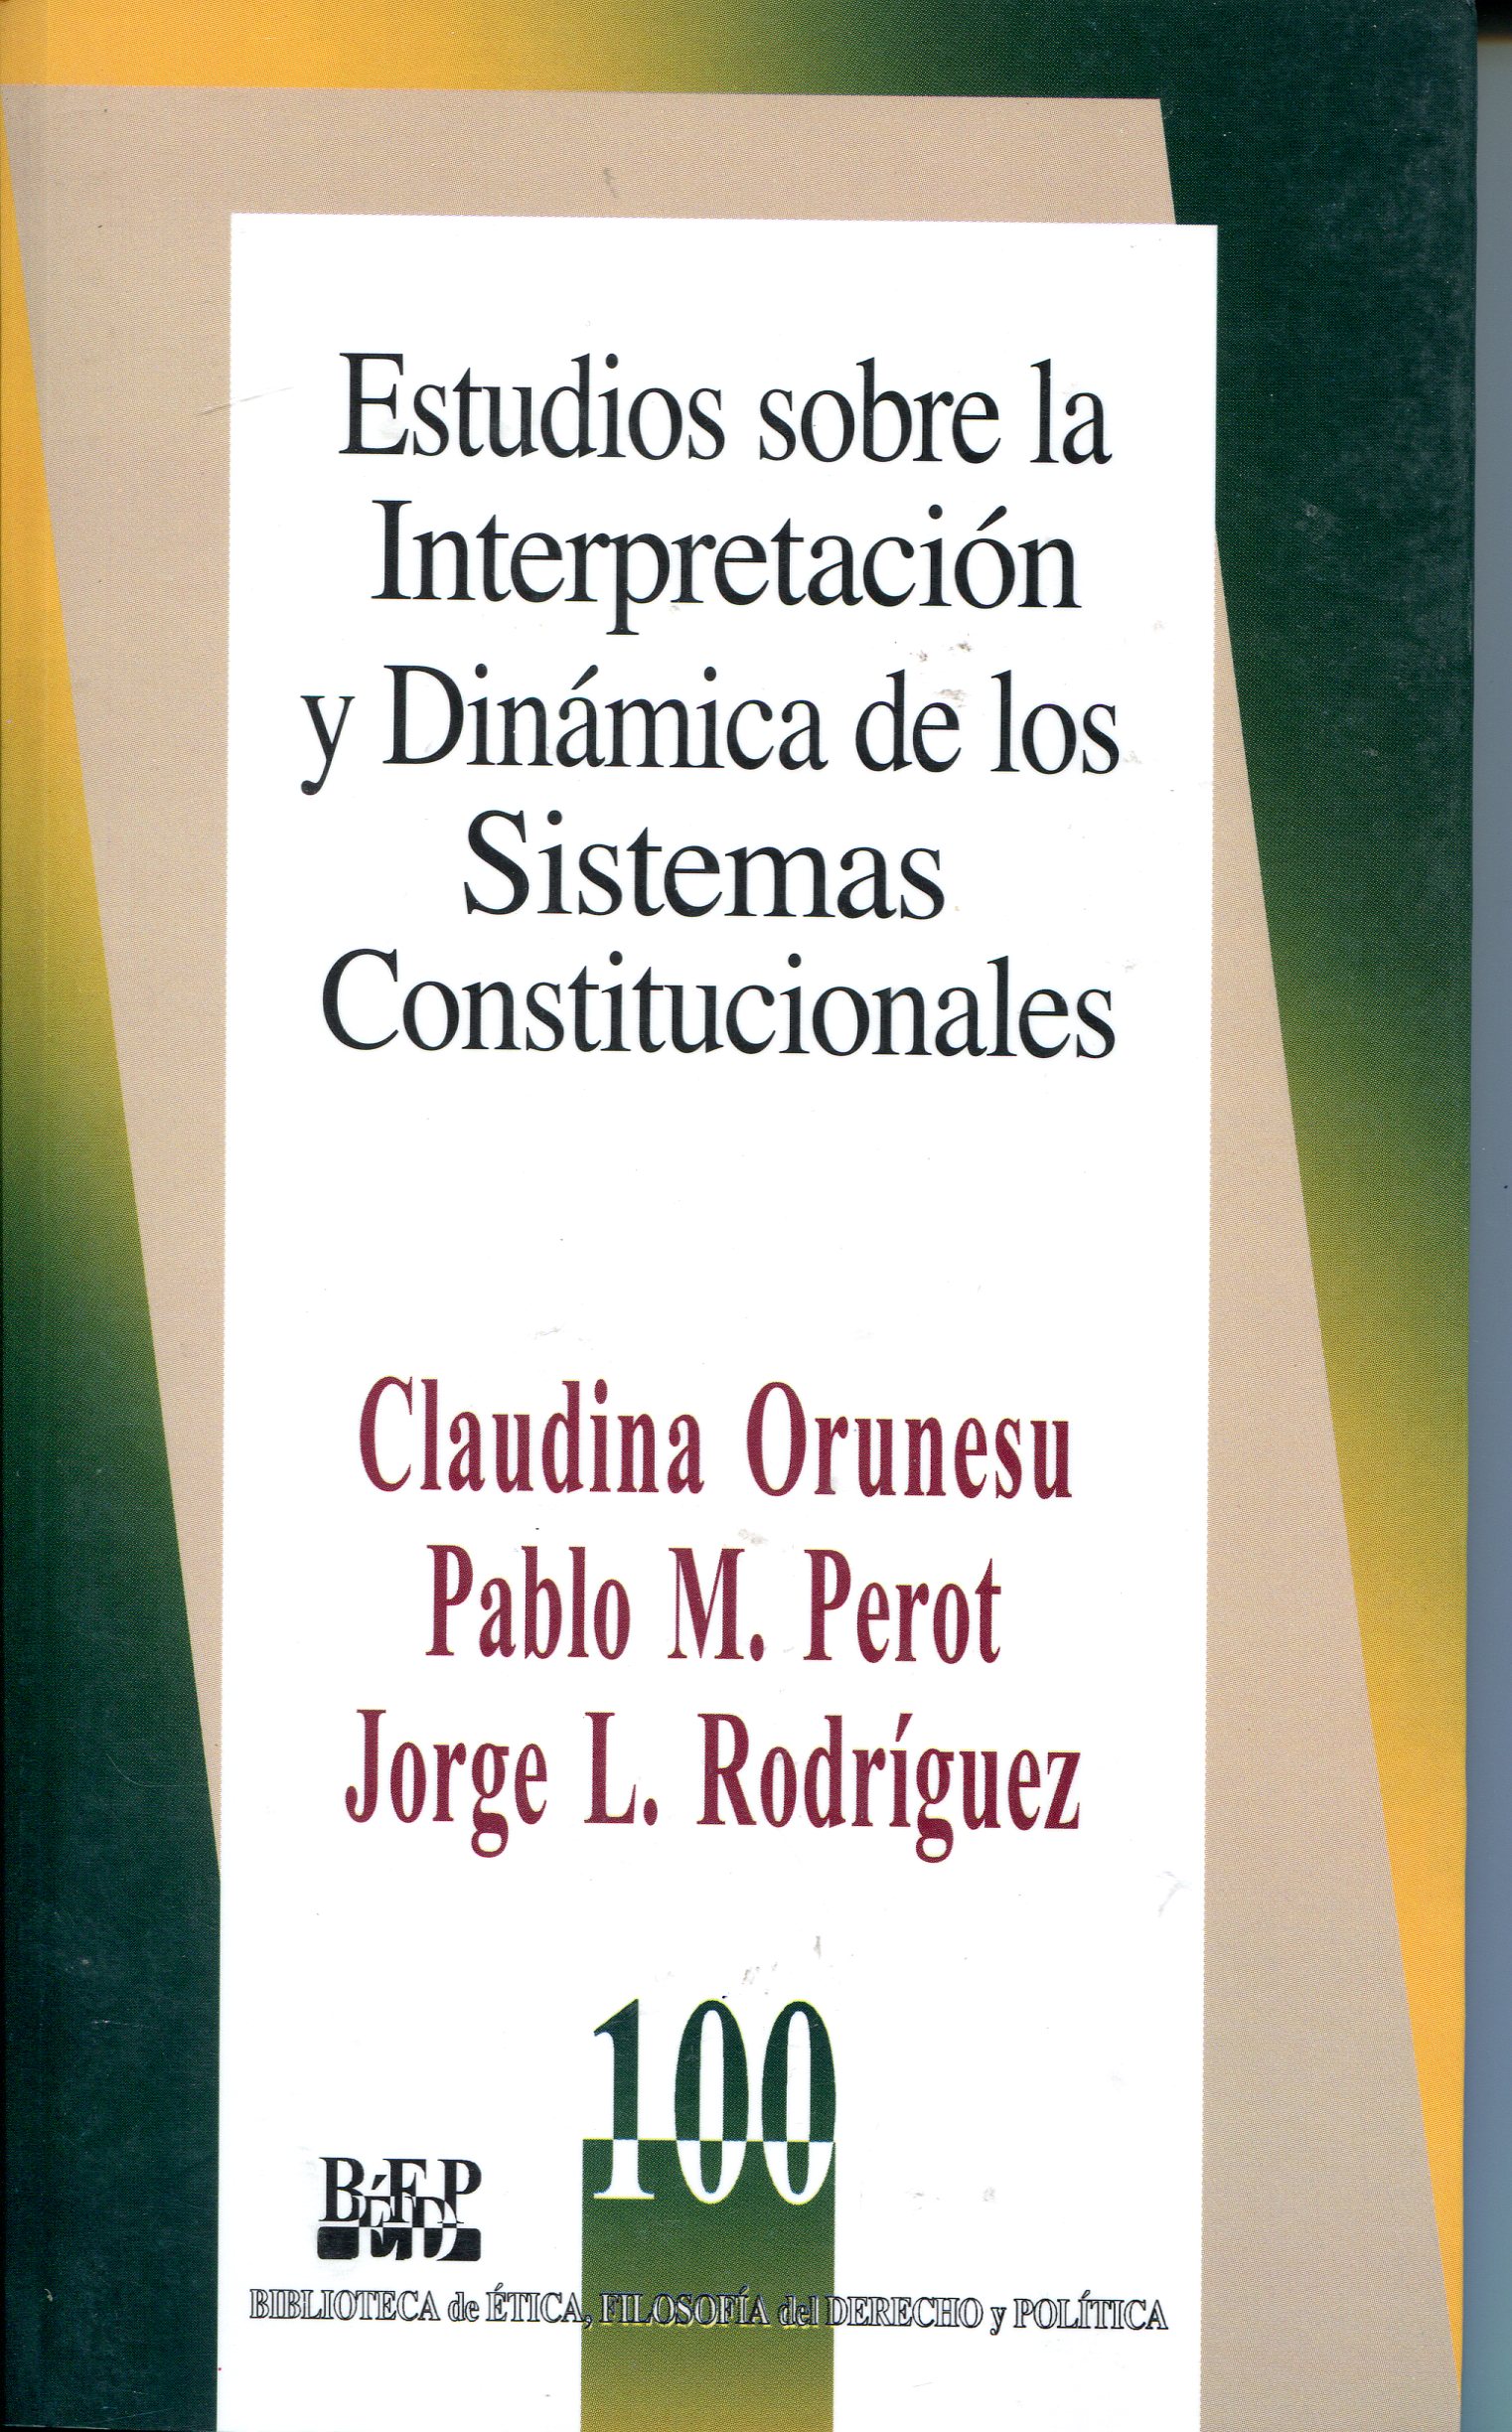 Estudios sobre la interpretación dinámica de los sistemas constitucionales